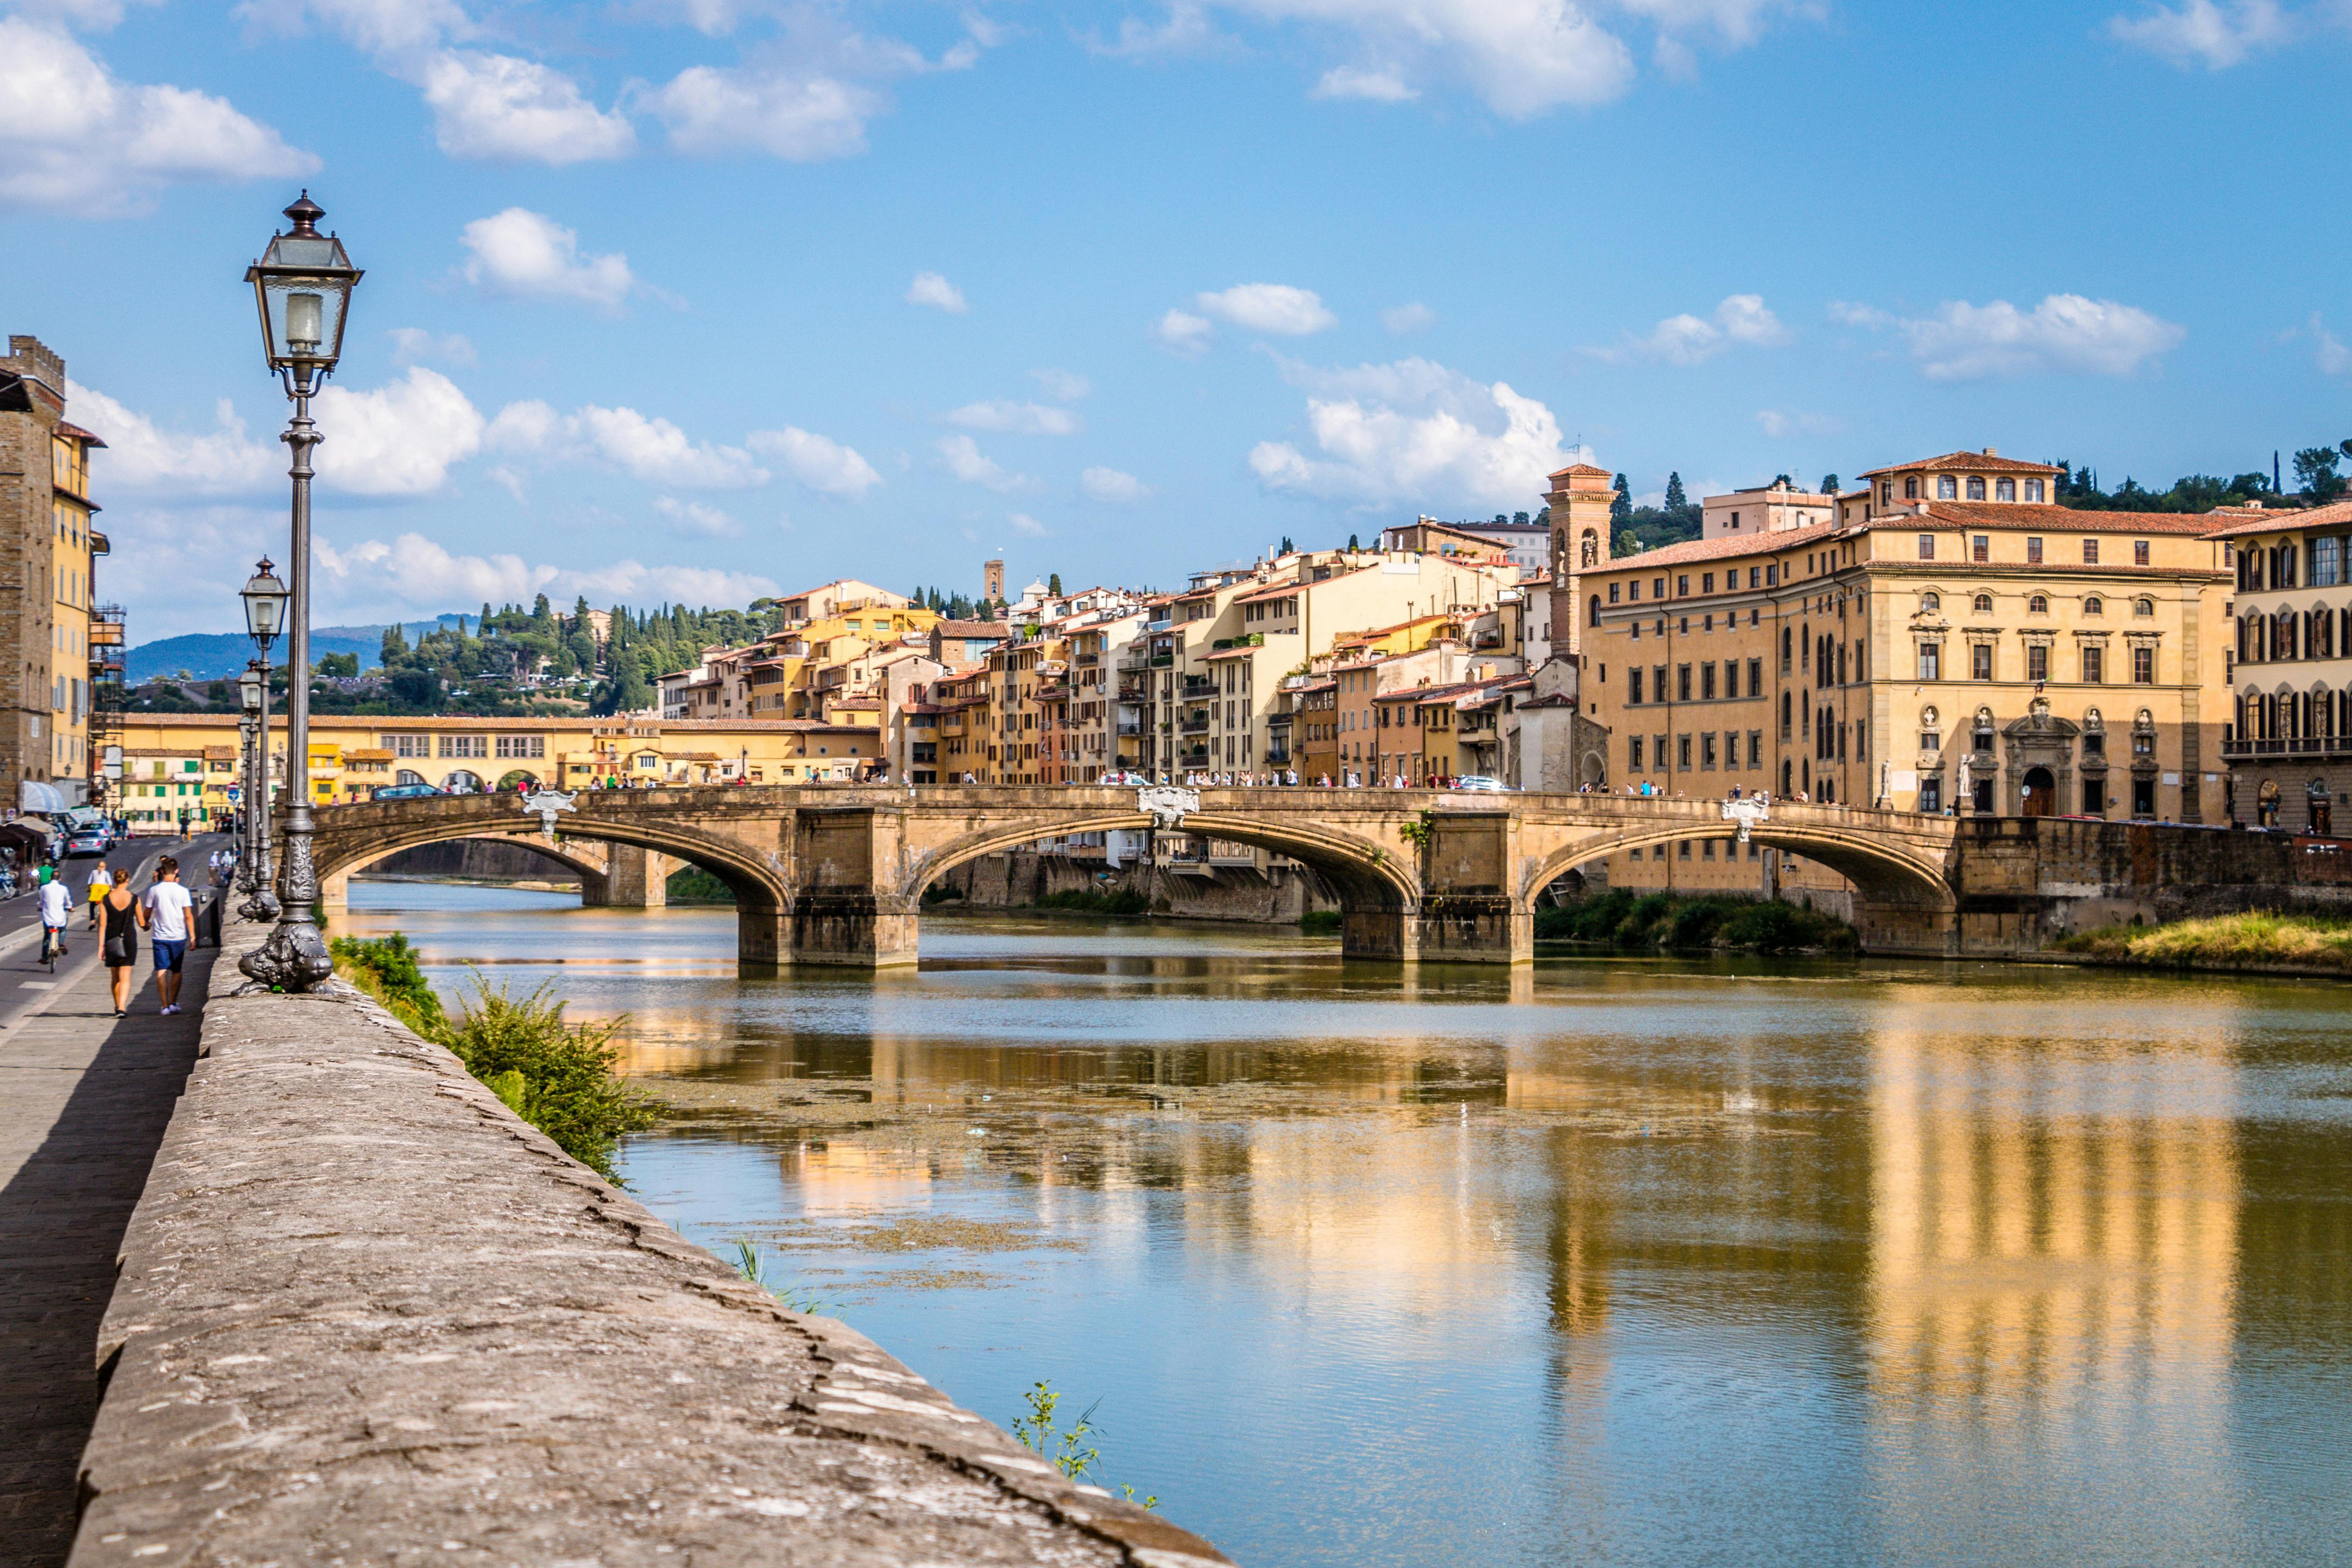 Firenze halvprivat udflugt med Uffizi og Accademia